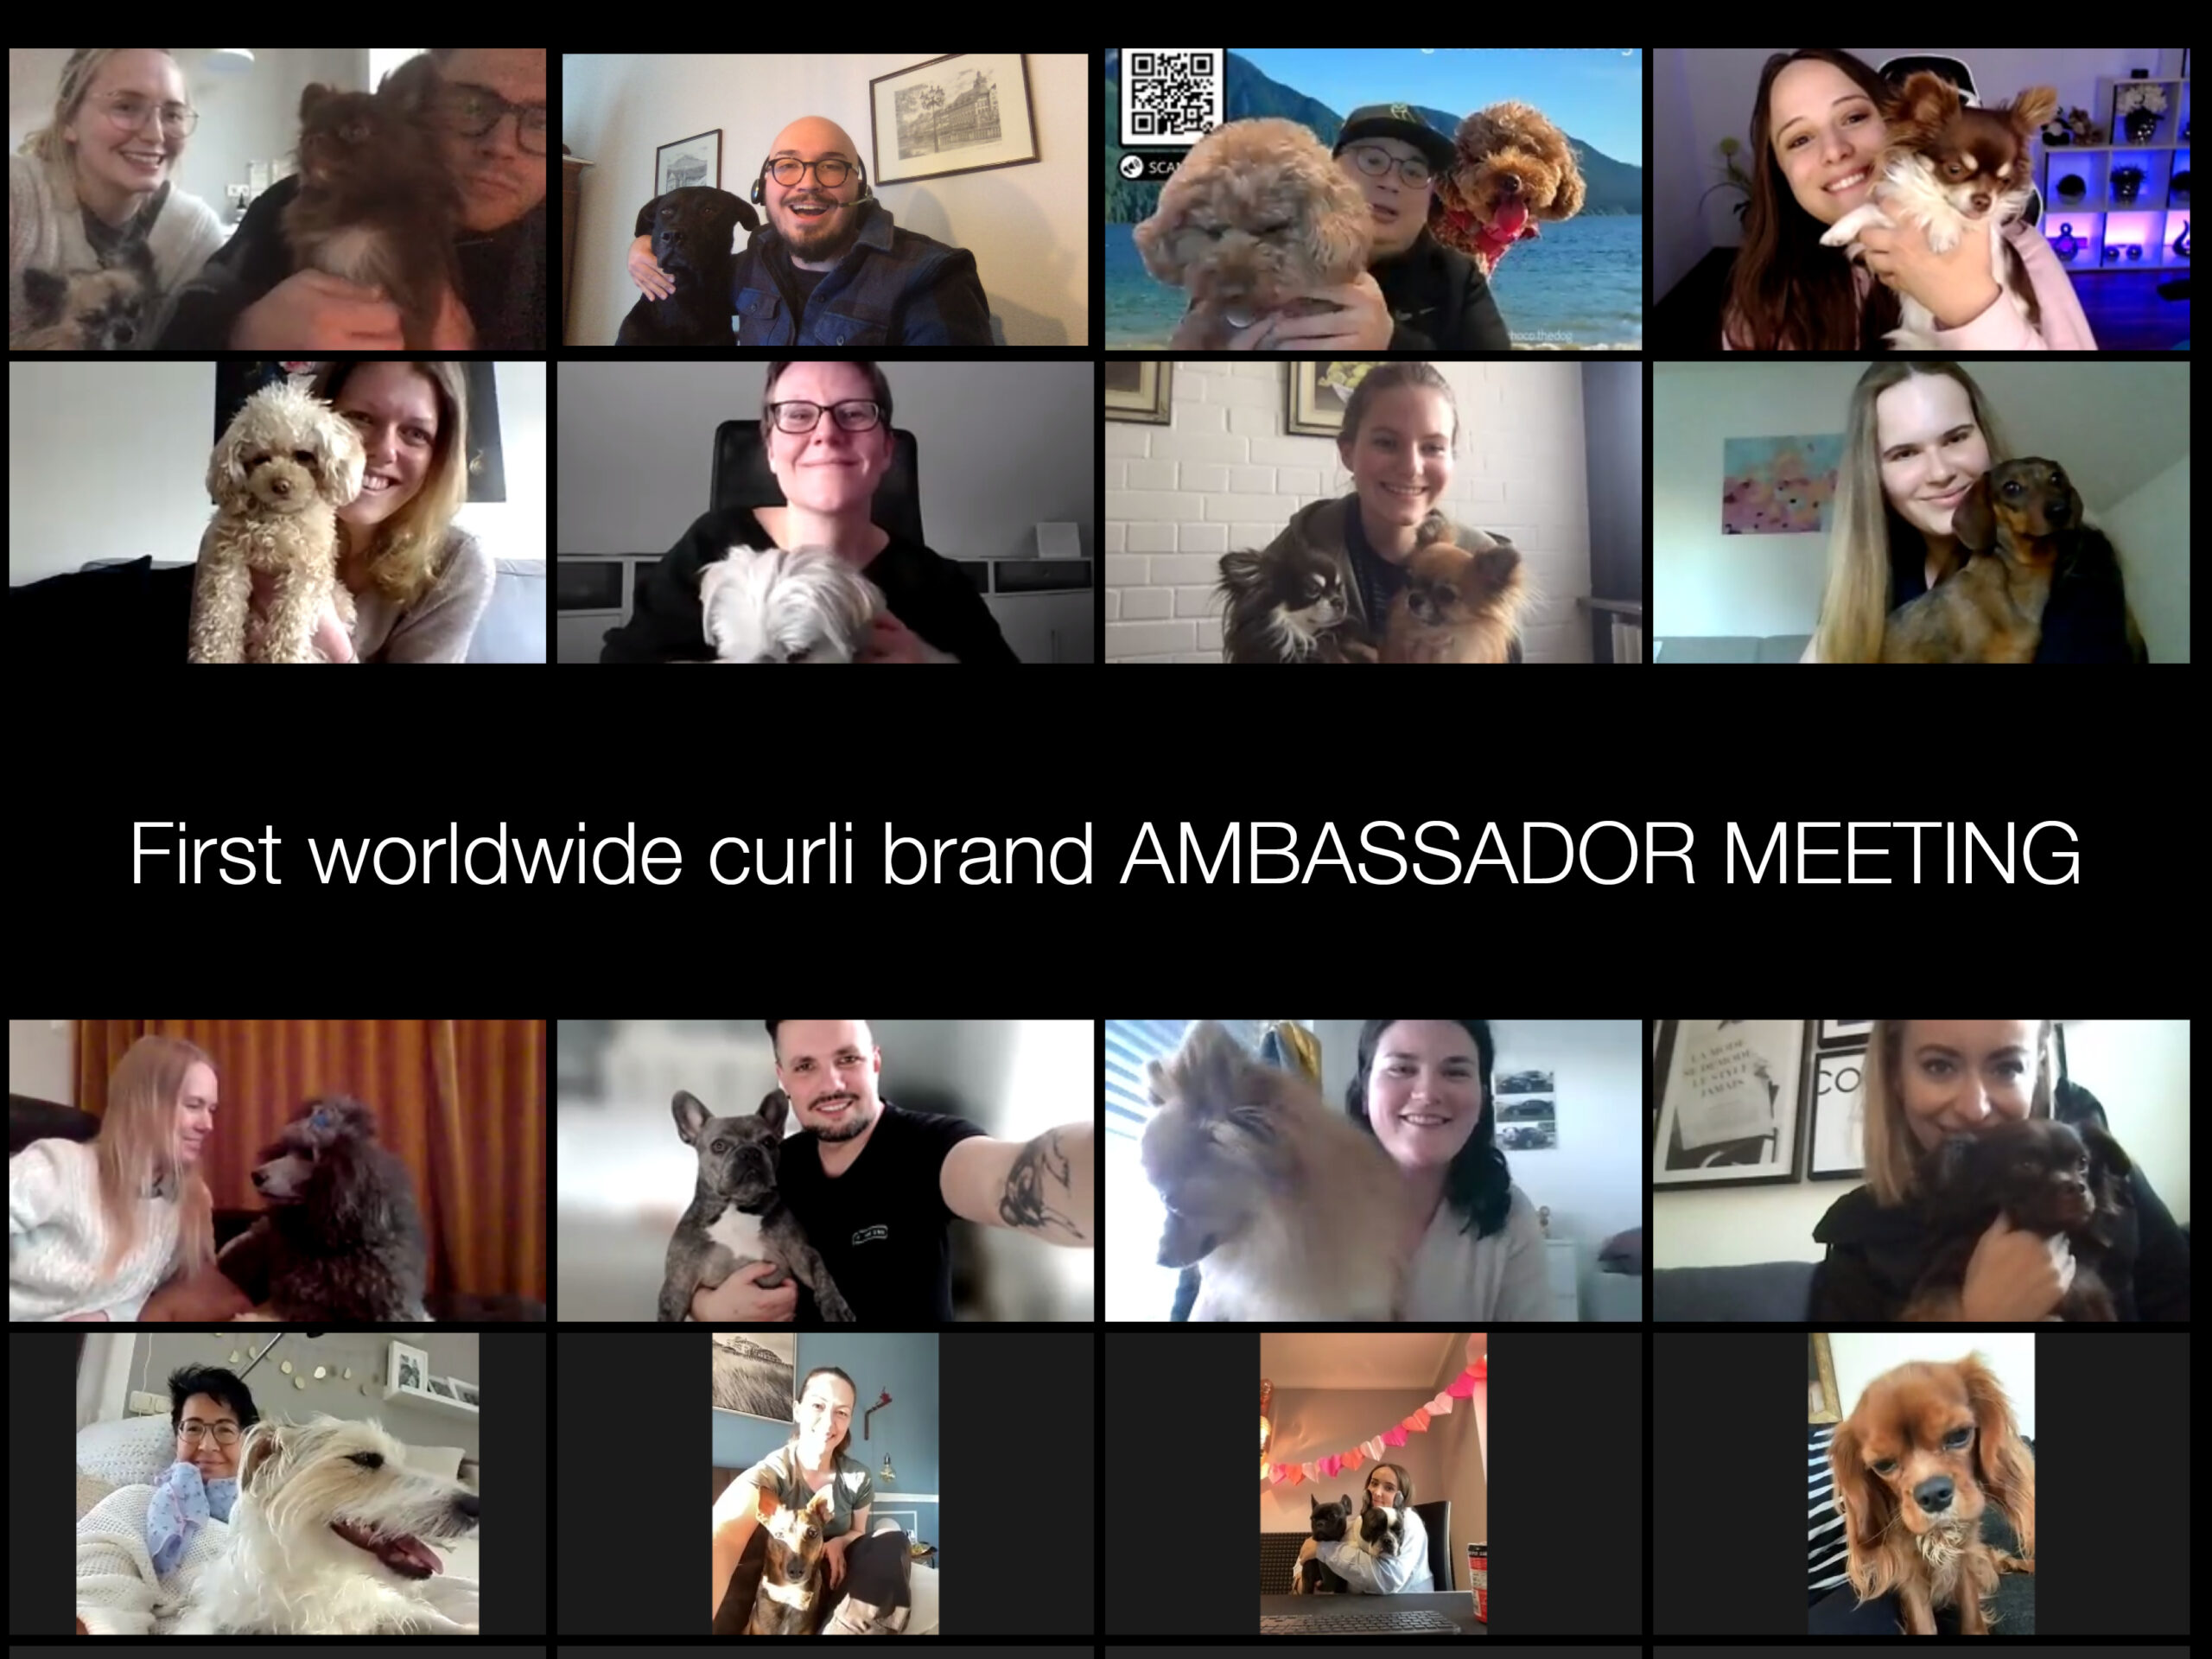 First Worldwide Ambassador Meeting